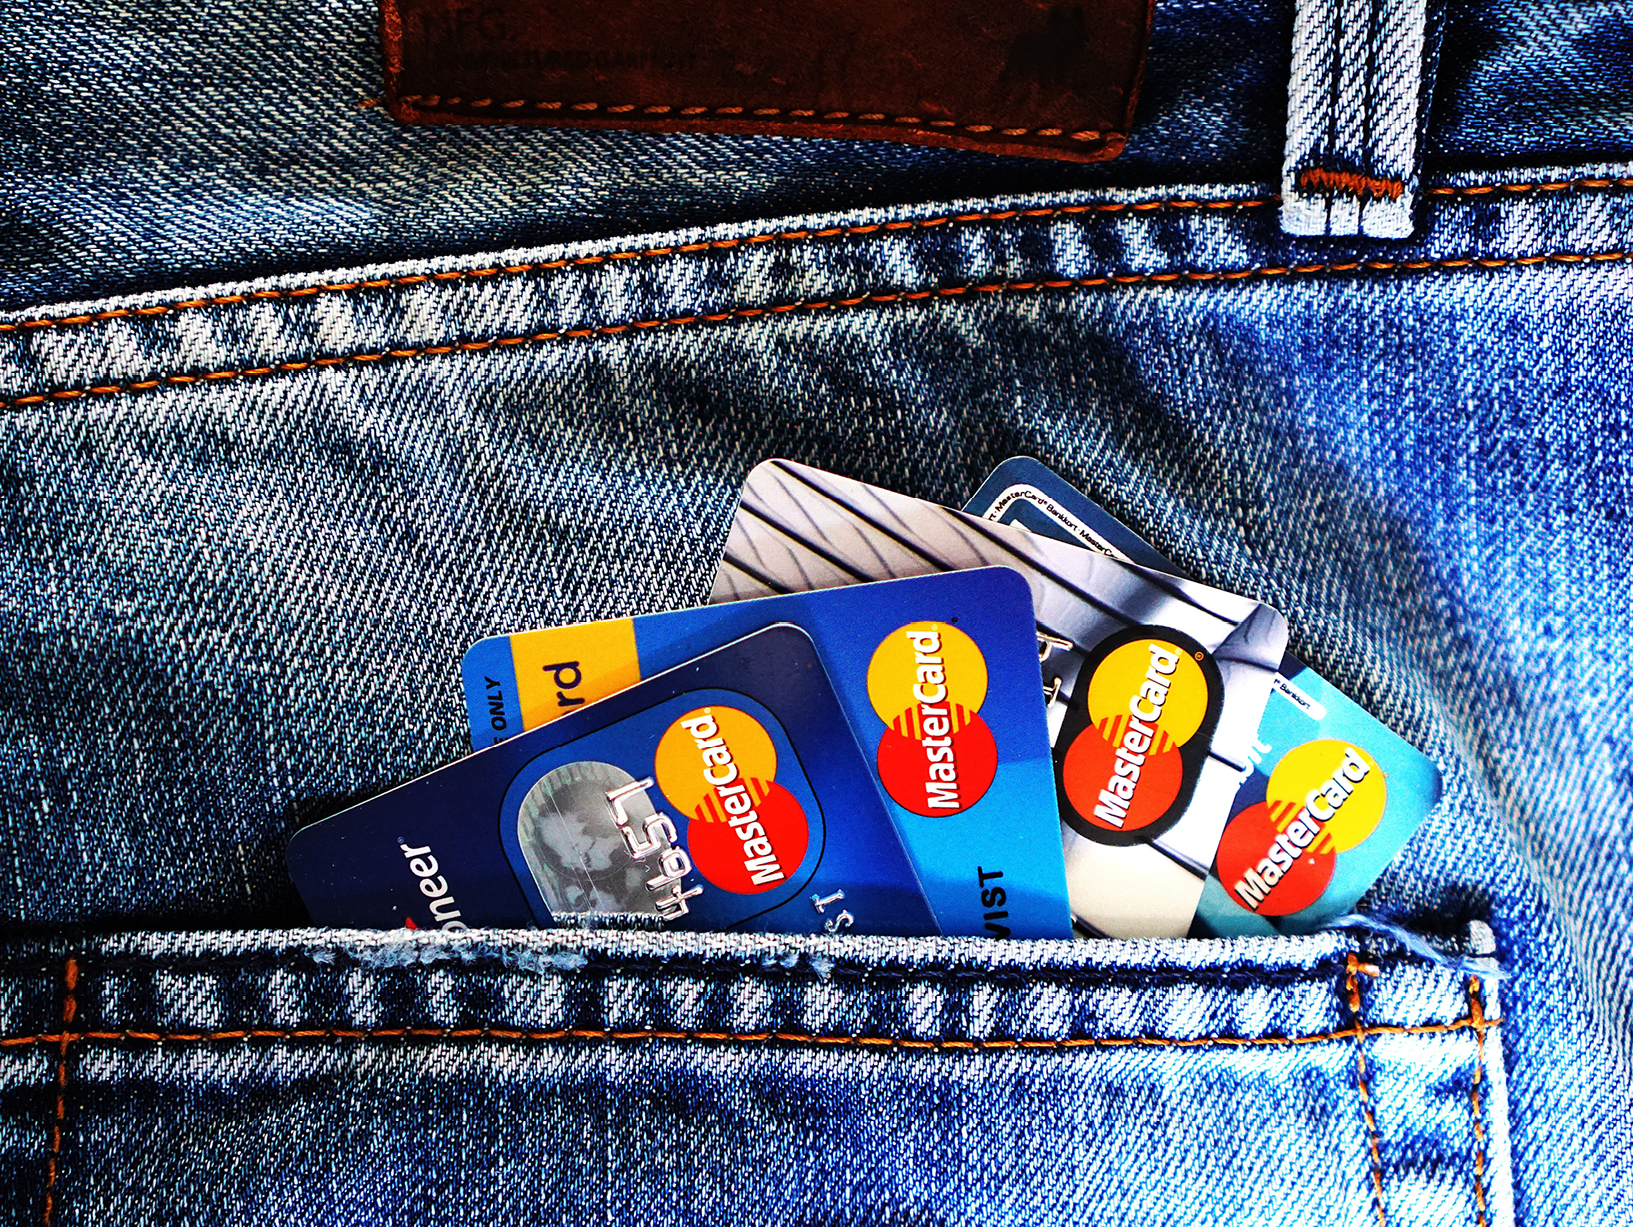 credit cards in back pocket